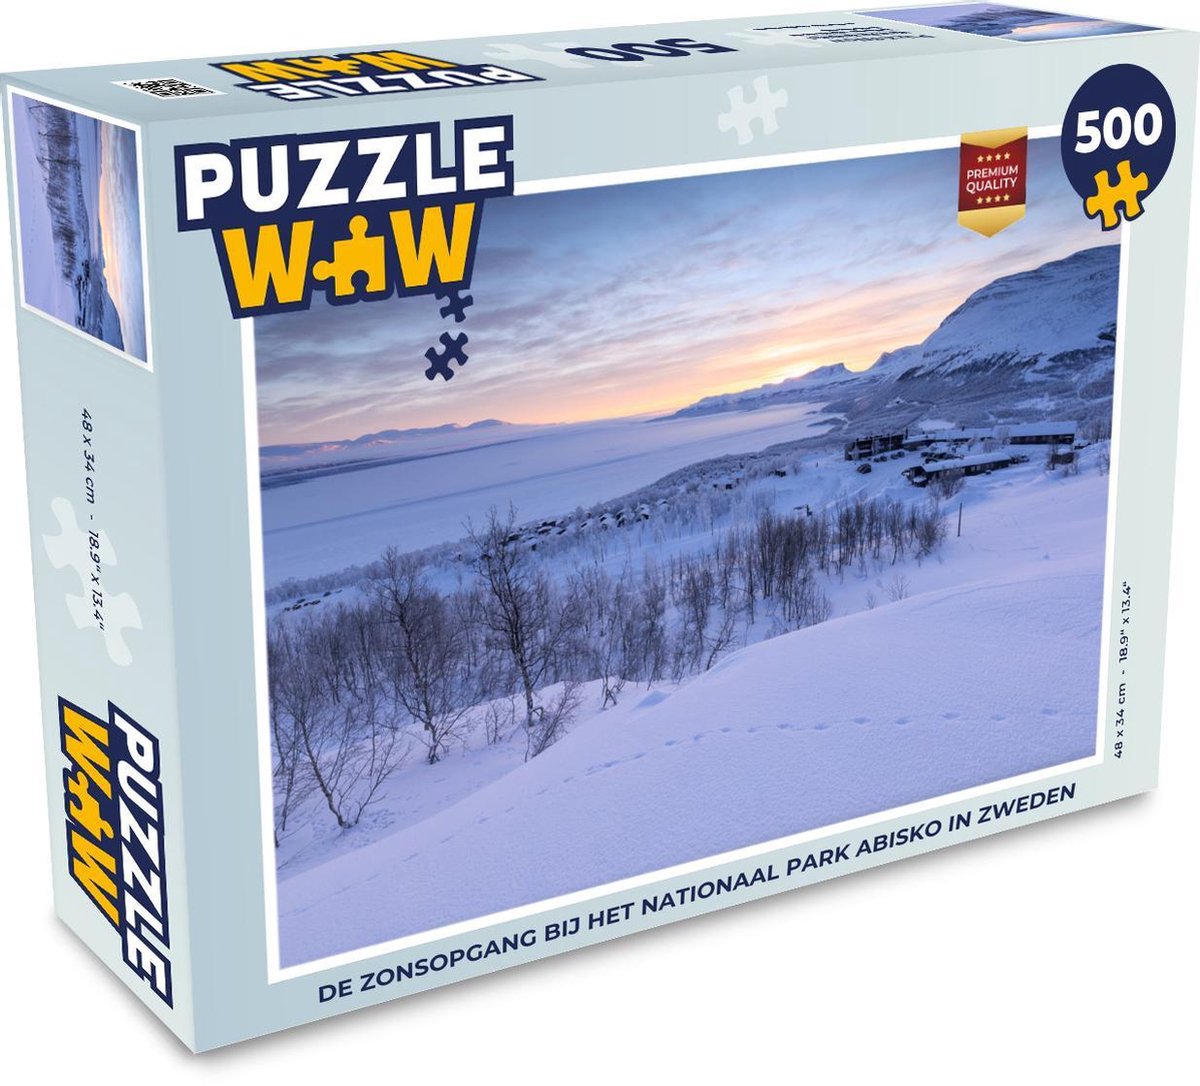 Afbeelding van product Puzzel 500 stukjes Nationaal park Abisko - De zonsopgang bij het Nationaal park Abisko in Zweden - PuzzleWow heeft +100000 puzzels